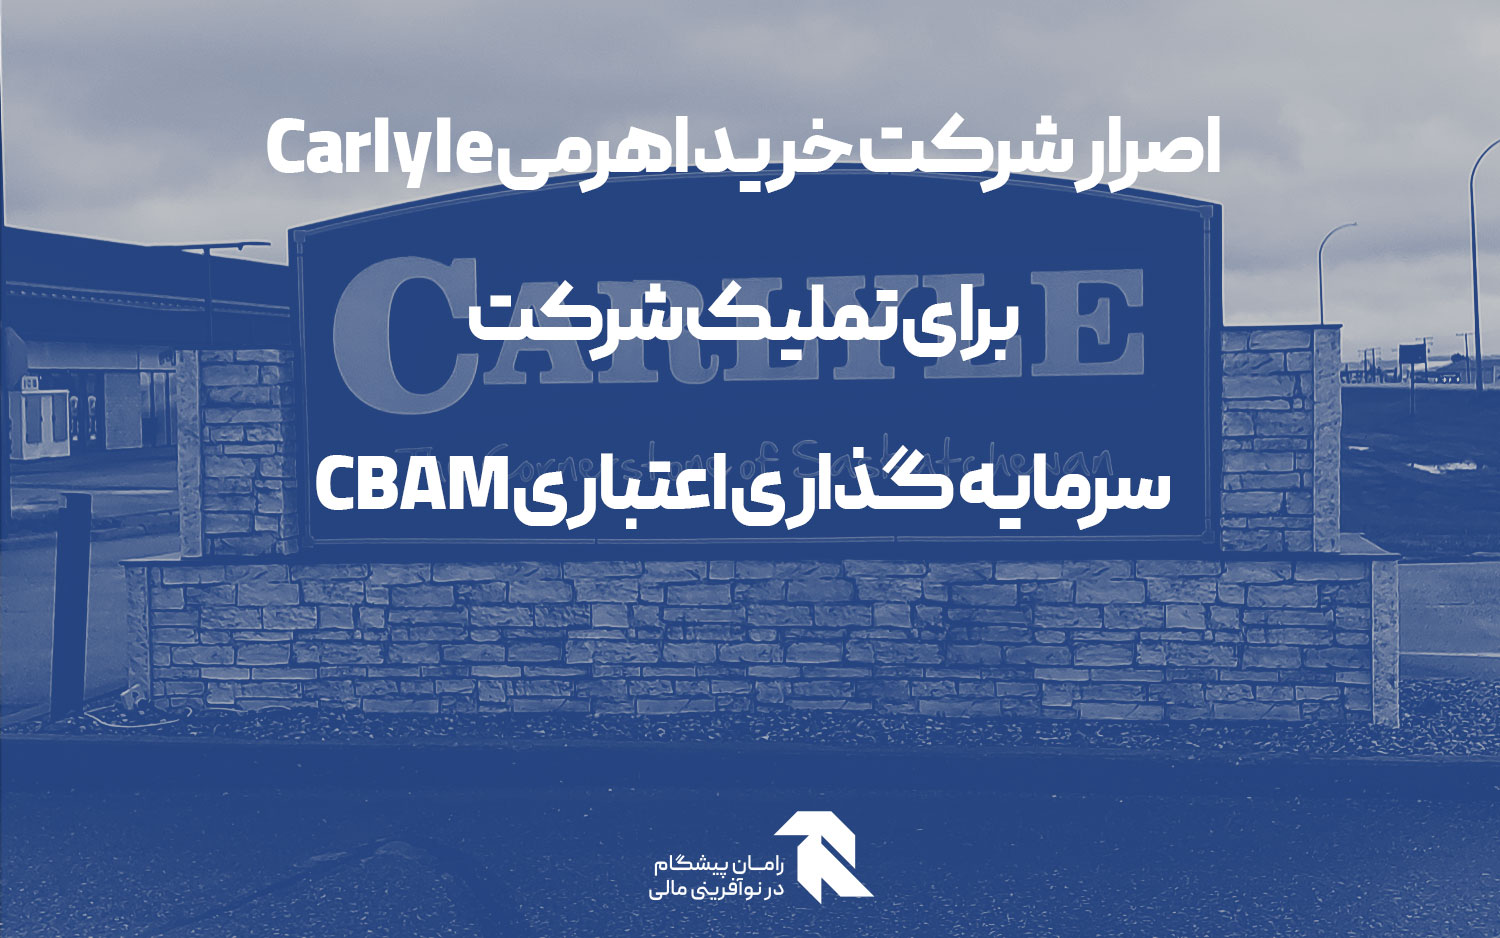 اصرار شرکت خرید اهرمی Carlyle برای تملیک شرکت سرمایه گذاری اعتباری CBAM